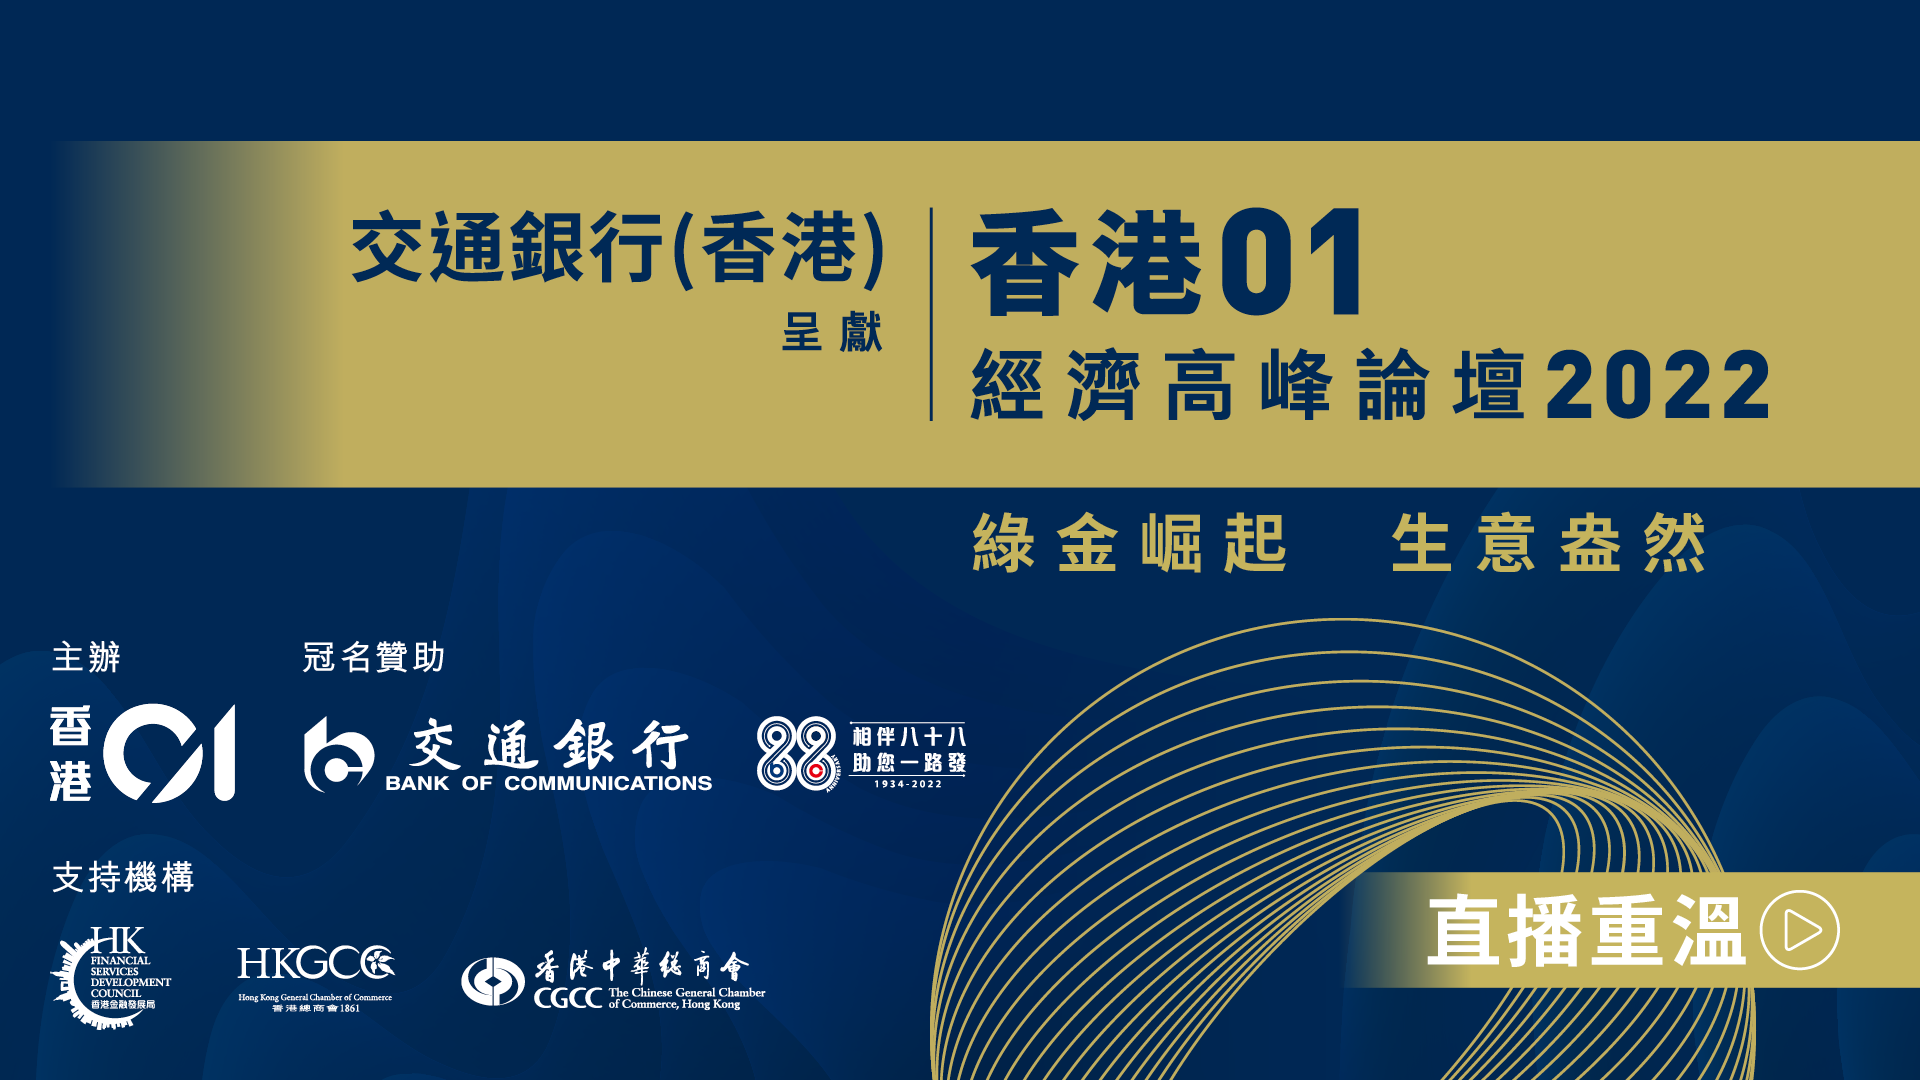 【重溫】交通銀行(香港)呈獻《香港01》經濟高峰論壇2022